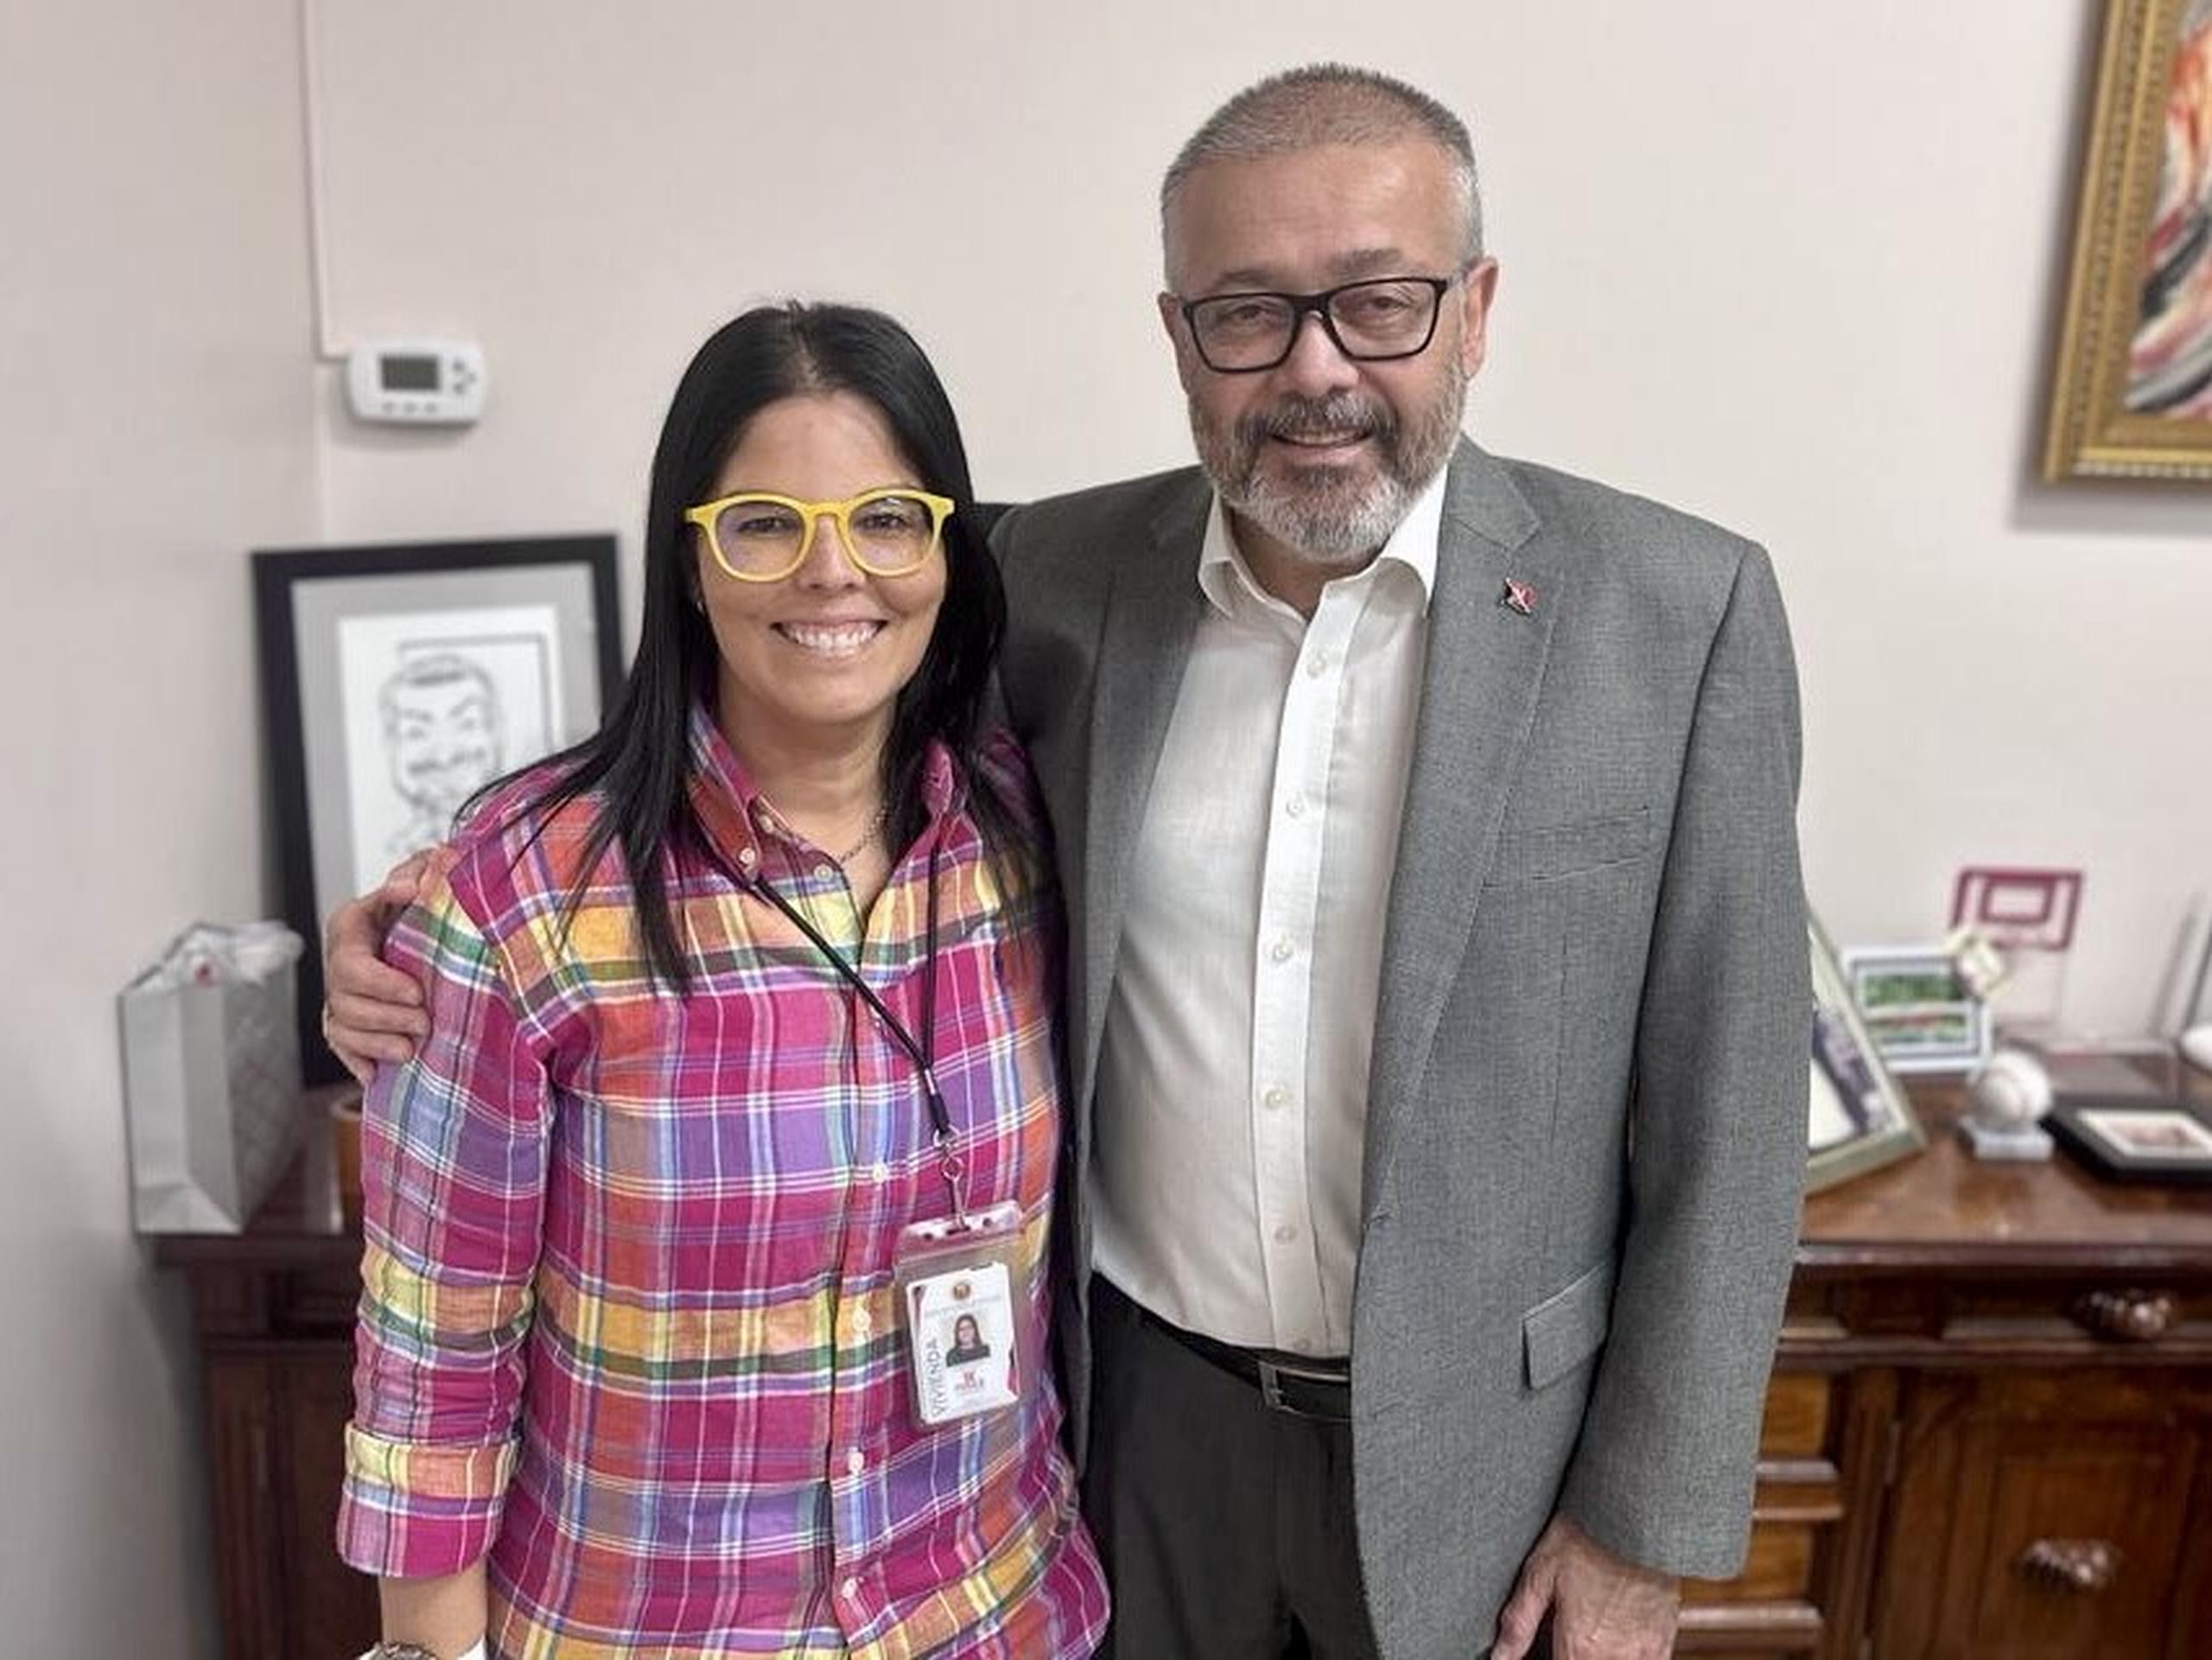 La licenciada Rebecca Ramos Franceschini junto al alcalde Luis Irizarry Pabón.